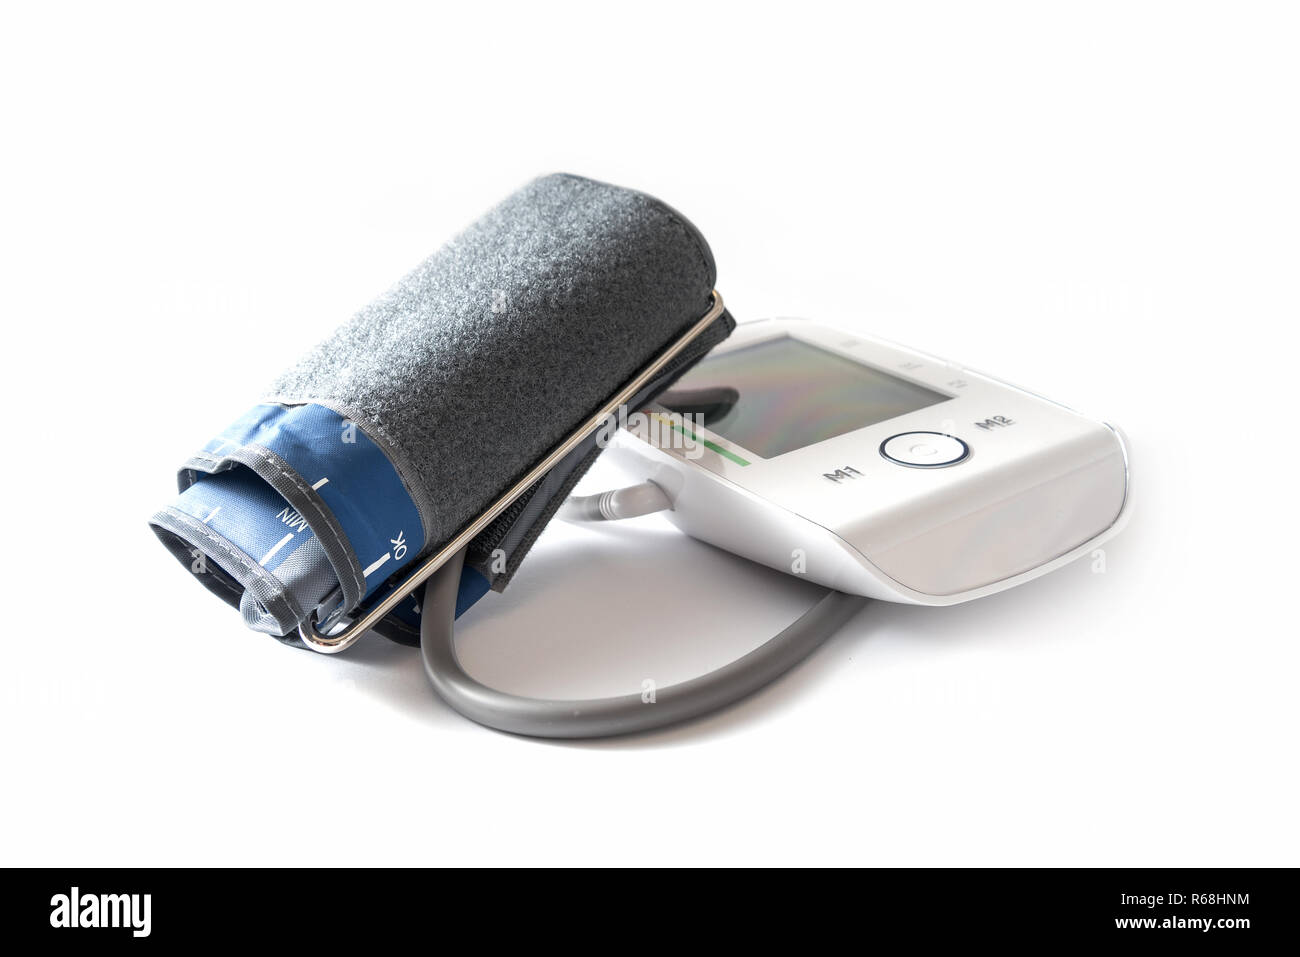 La pressione sanguigna manometro con bracciale e vuoto monitor digitale per indicare l'ipertensione e polso, isolato su uno sfondo bianco, salute e medicina dotare Foto Stock